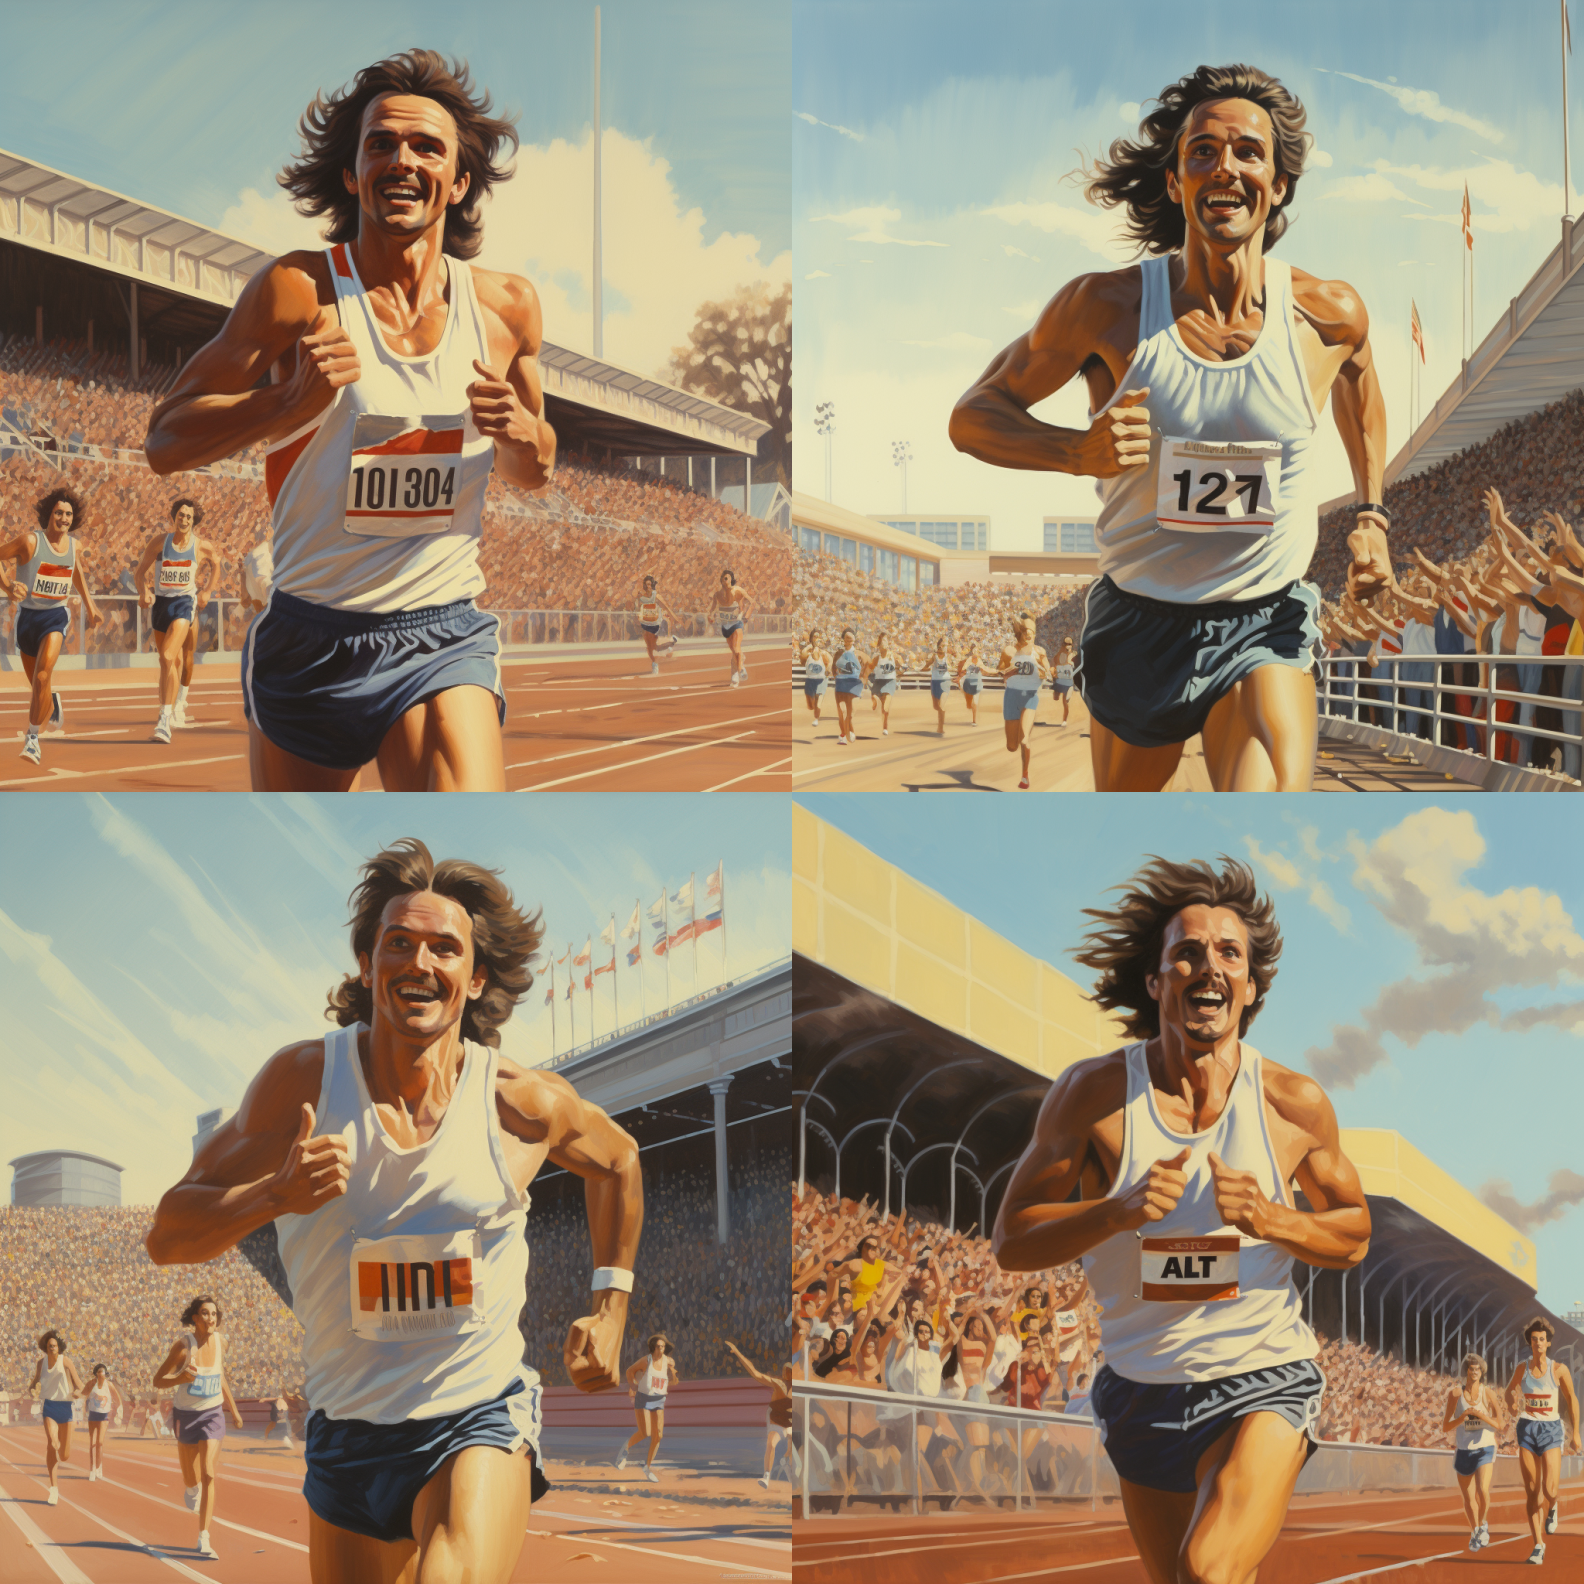 deckard7316_male_runner_winning_800_meter_run_1980s_long_brown__2ad2dd51-9c0d-4905-9e24-888cf4830a86.png